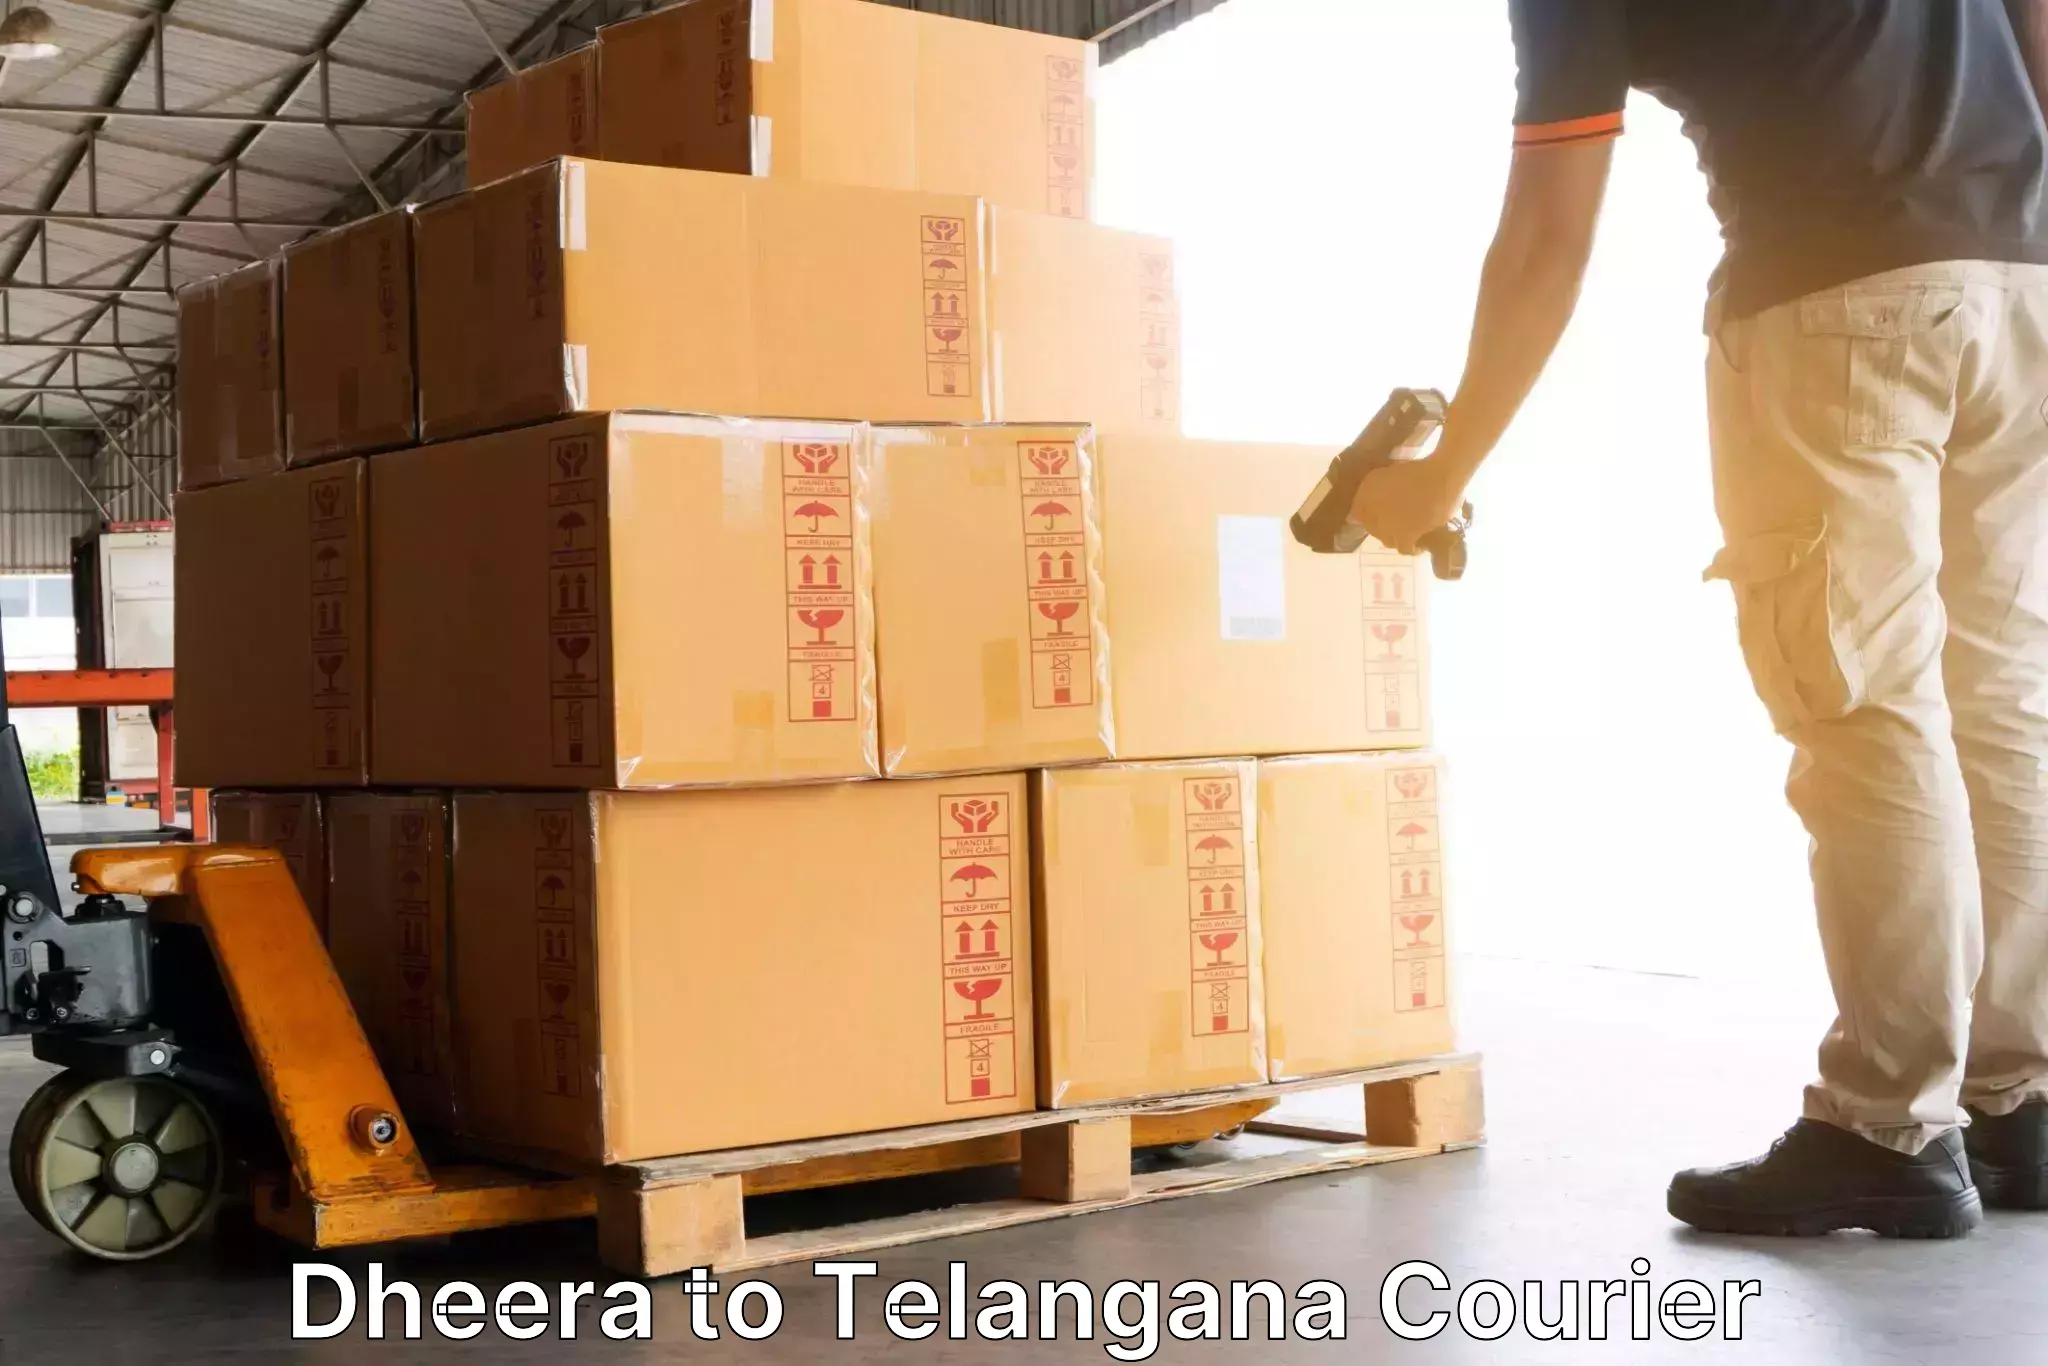 Express delivery network Dheera to Karimnagar